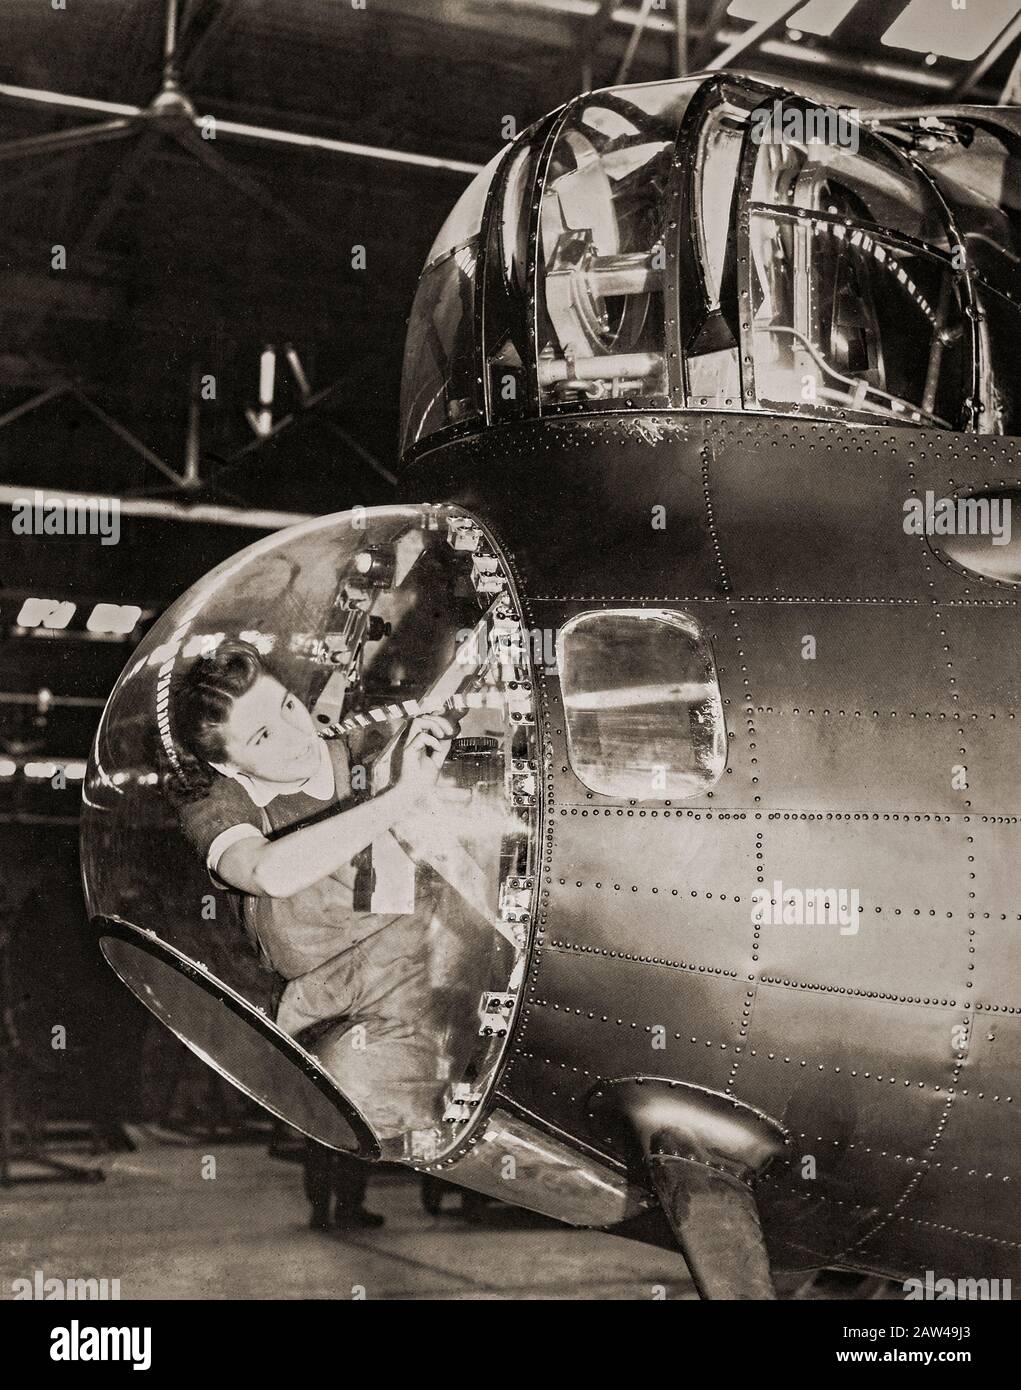 Un meccanico strumentale WAAF nella cupola dei bombardieri angusti che lavora su un pilota automatico di Lancaster Bomber. La WAAF (Women's Auxiliary Air Force) è stata creata il 28 giugno 1939, e le donne reclutate nella WAAF hanno ricevuto una formazione di base. I WAAF non servivano come equipaggio, ma erano attivi nell'imballaggio di paracadute e nella creala dei palloncini di sbarramento oltre ad eseguire catering, meteorologia, radar, manutenzione di aerei, trasporto, le funzioni di comunicazione compreso l'operazione telefonica e telegrafica senza fili. Foto Stock